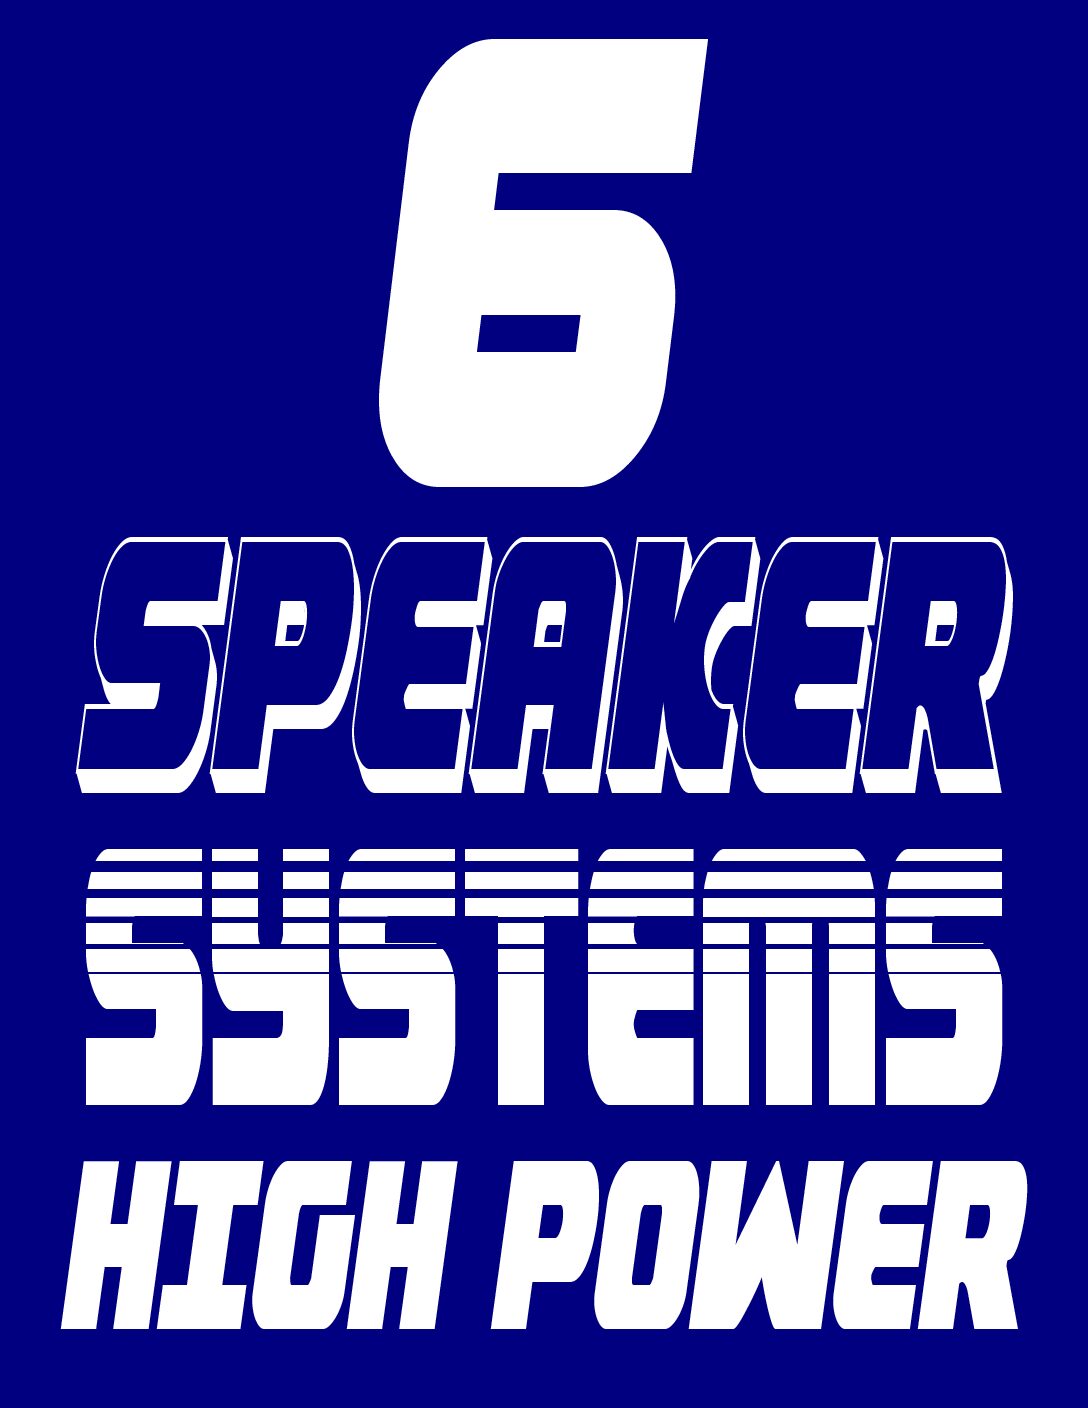 6 SPEAKER SYSTEM